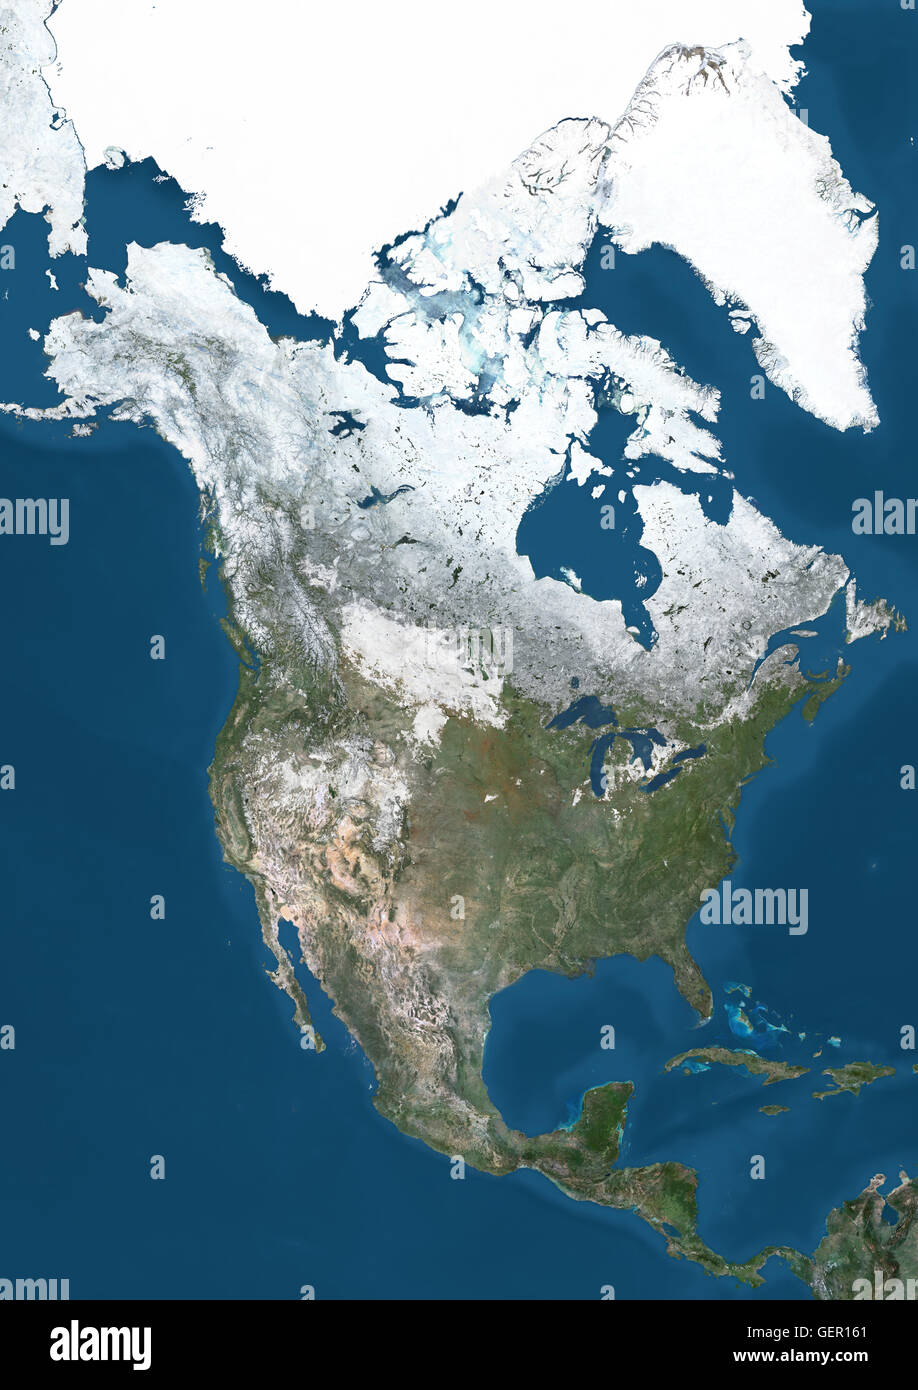 Vue Satellite de l'Amérique du Nord en hiver, avec vue partielle de la couverture de neige et les glaces de l'Arctique. Cette image a été compilé à partir de données acquises par les satellites Landsat 7 et 8. Banque D'Images